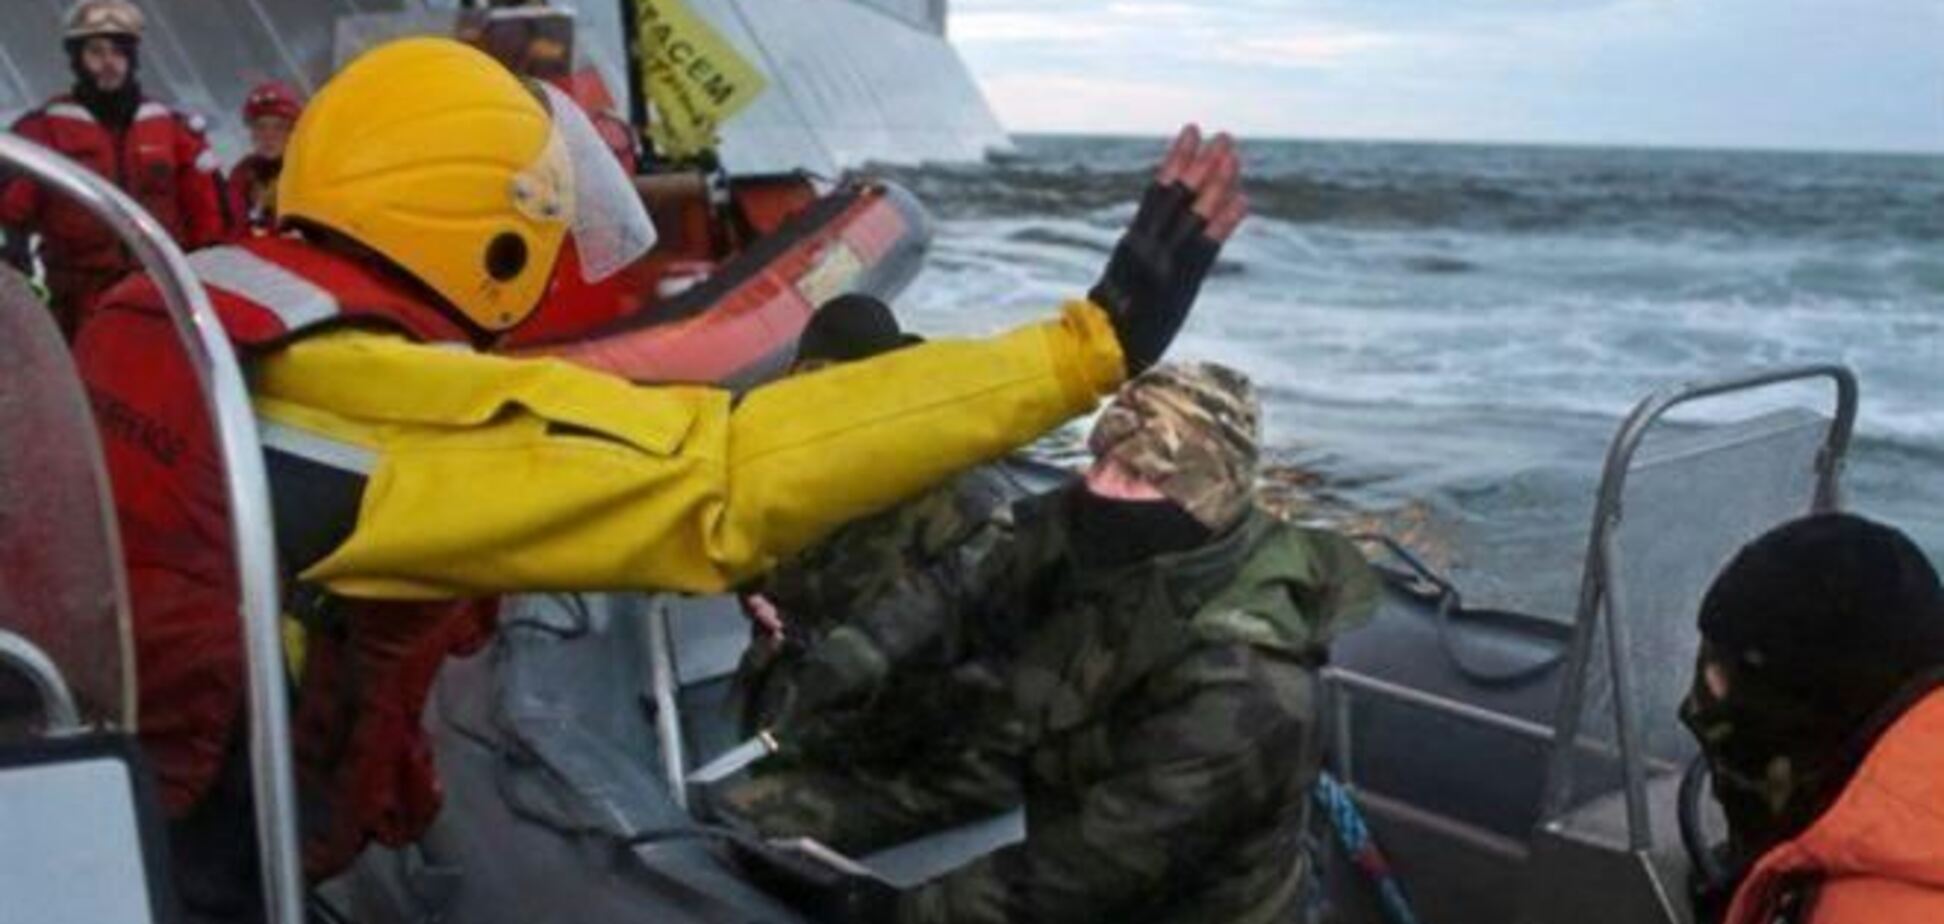 Двум активистам Greenpeace предъявили обвинения в пиратстве